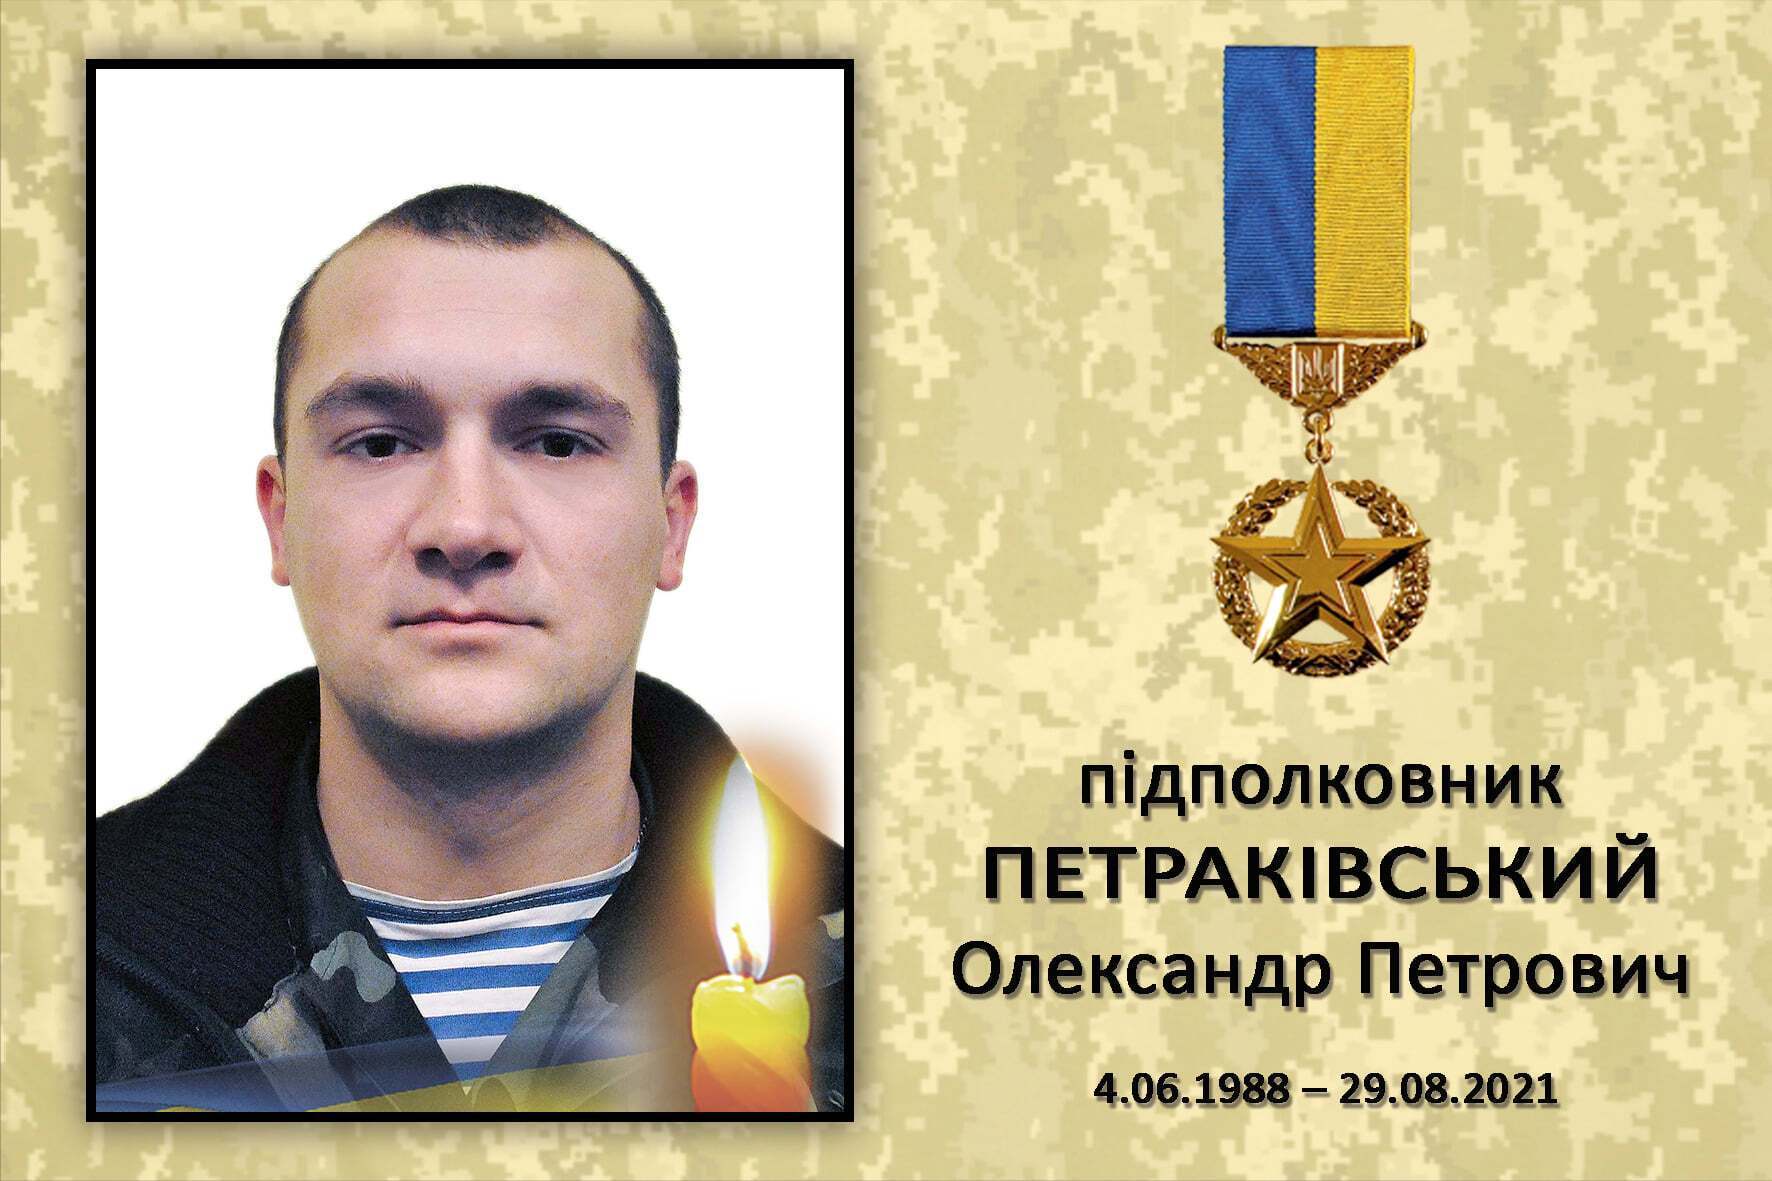 Олександр Петраківський – Герой України